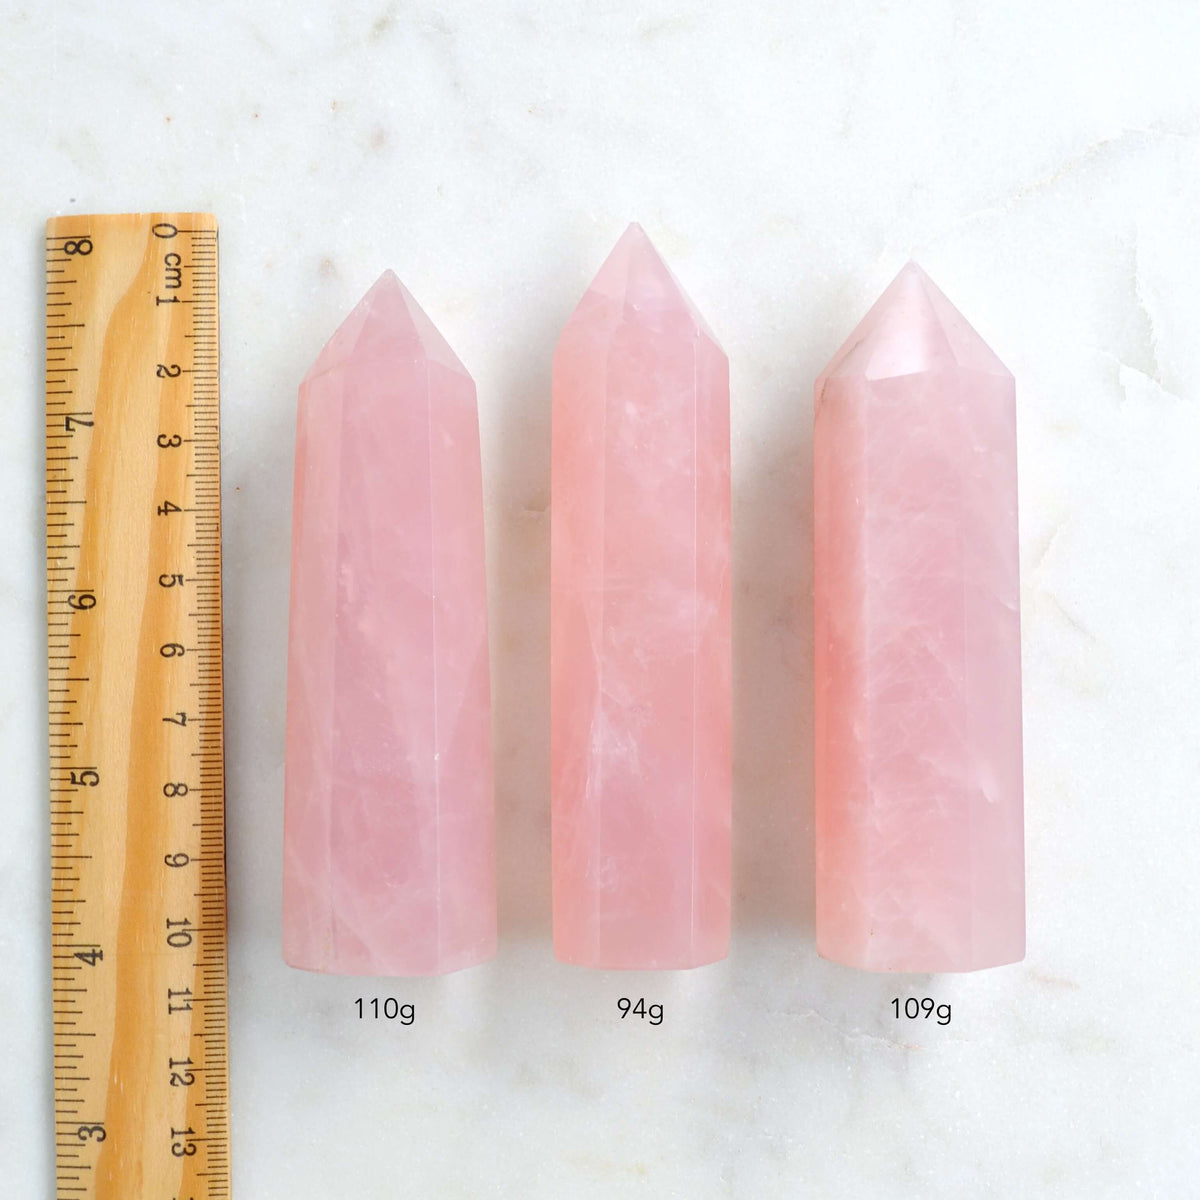 rose quartz towers